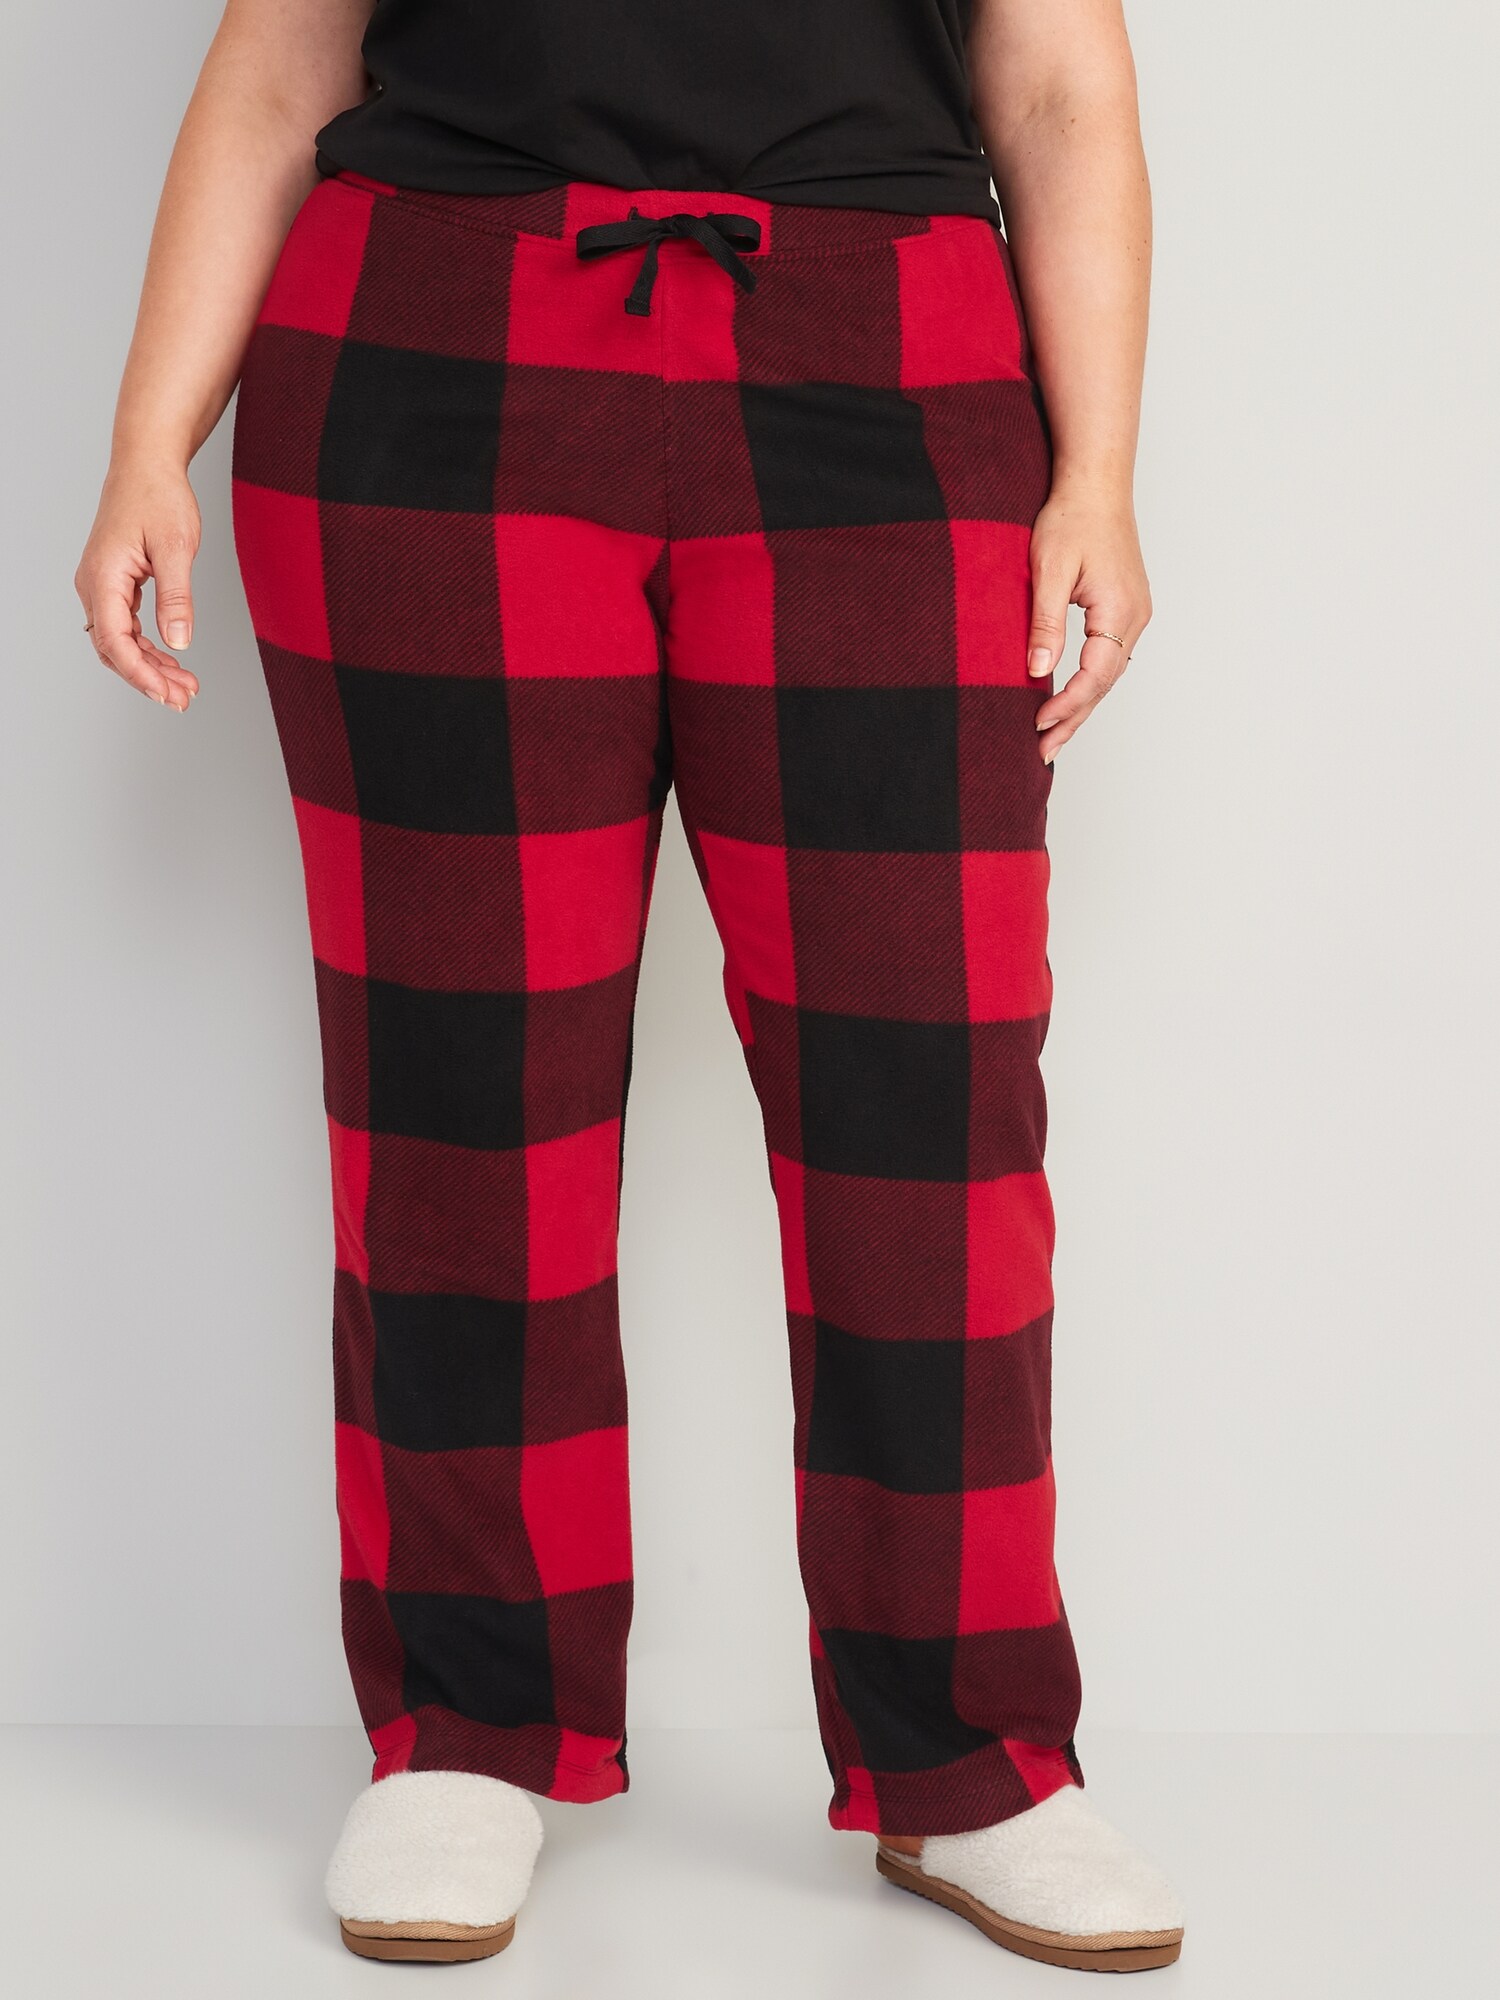 Matching Printed Microfleece Pajama Pants